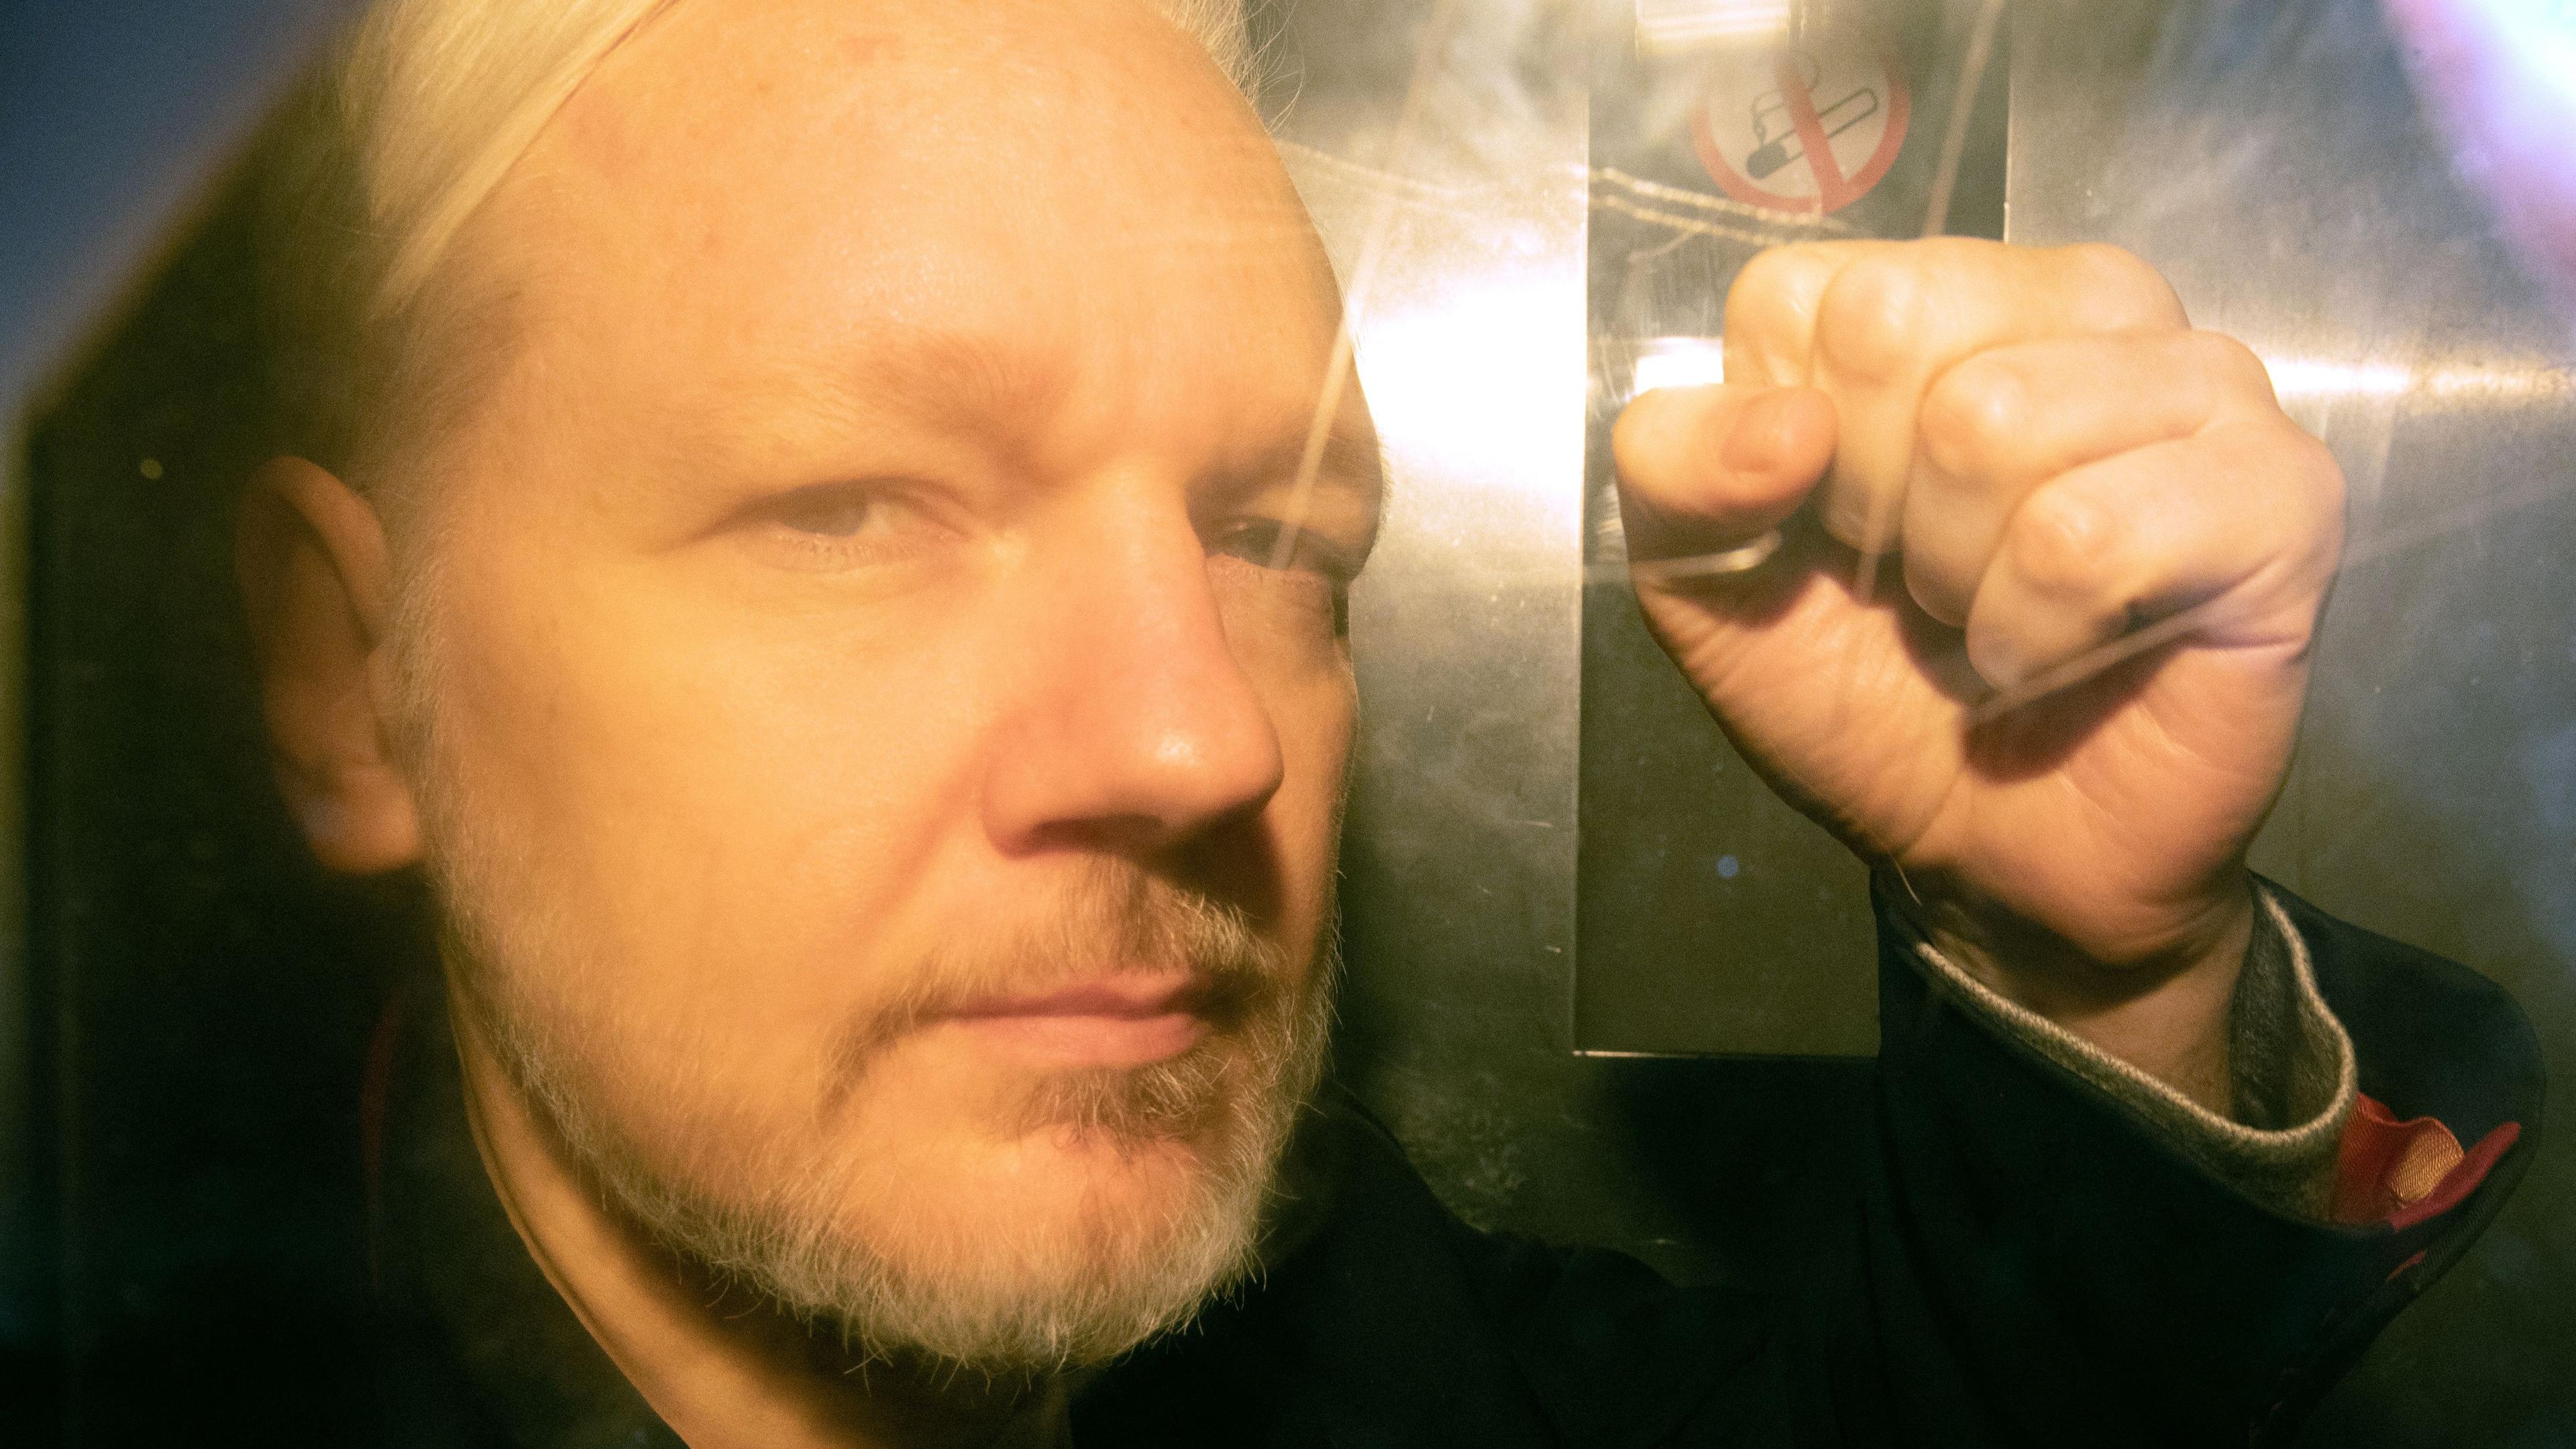 Julian Assange i London, 2019. Assange har suttit i ett brittiskt fängelse de senaste fem åren i väntan på eventuell utlämning till USA. Foto: Daniel Leal/AFP via Getty Images